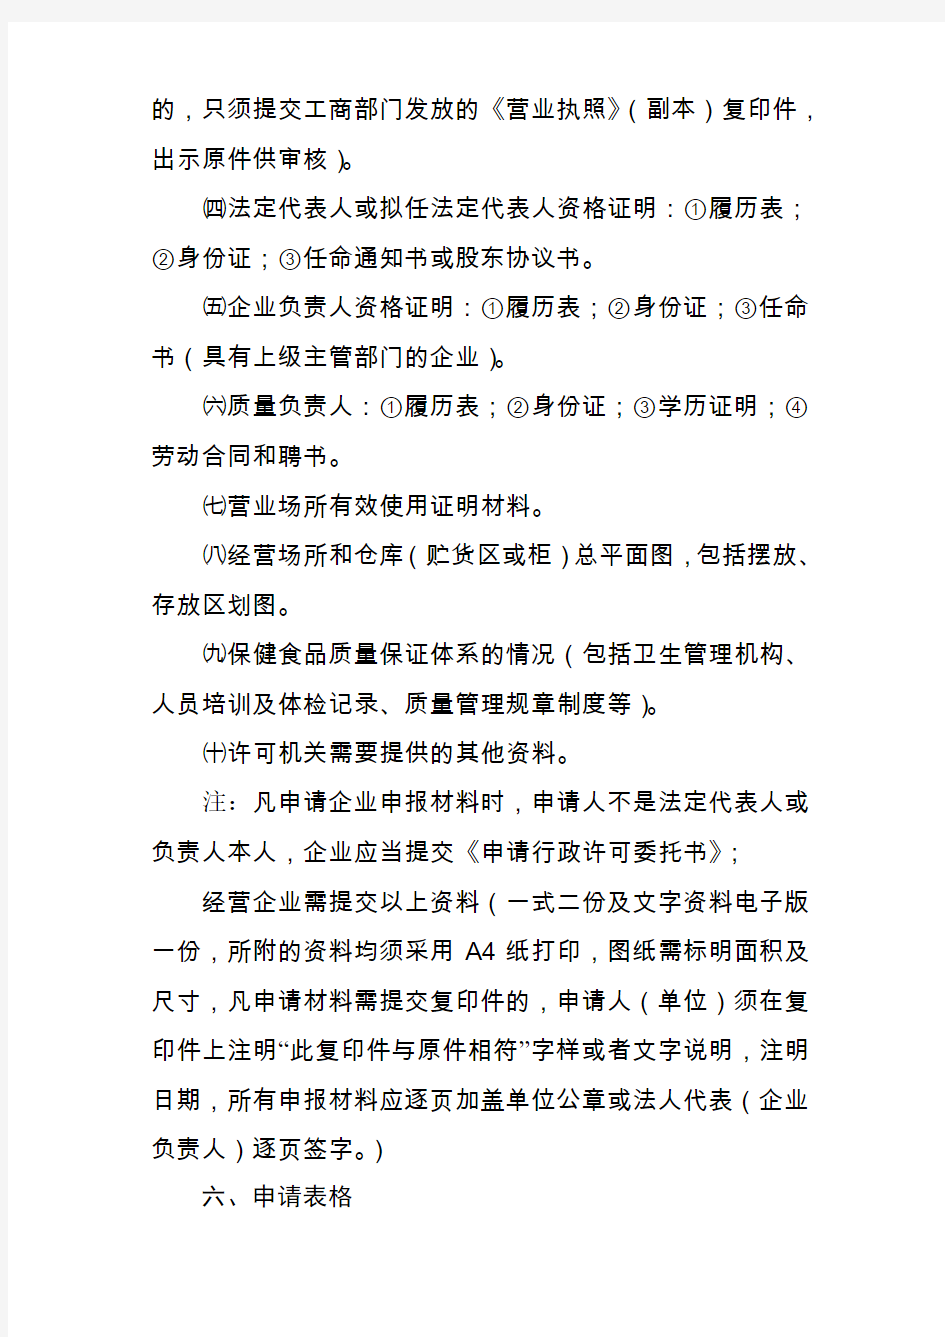 广州市保健食品经营企业卫生许可证